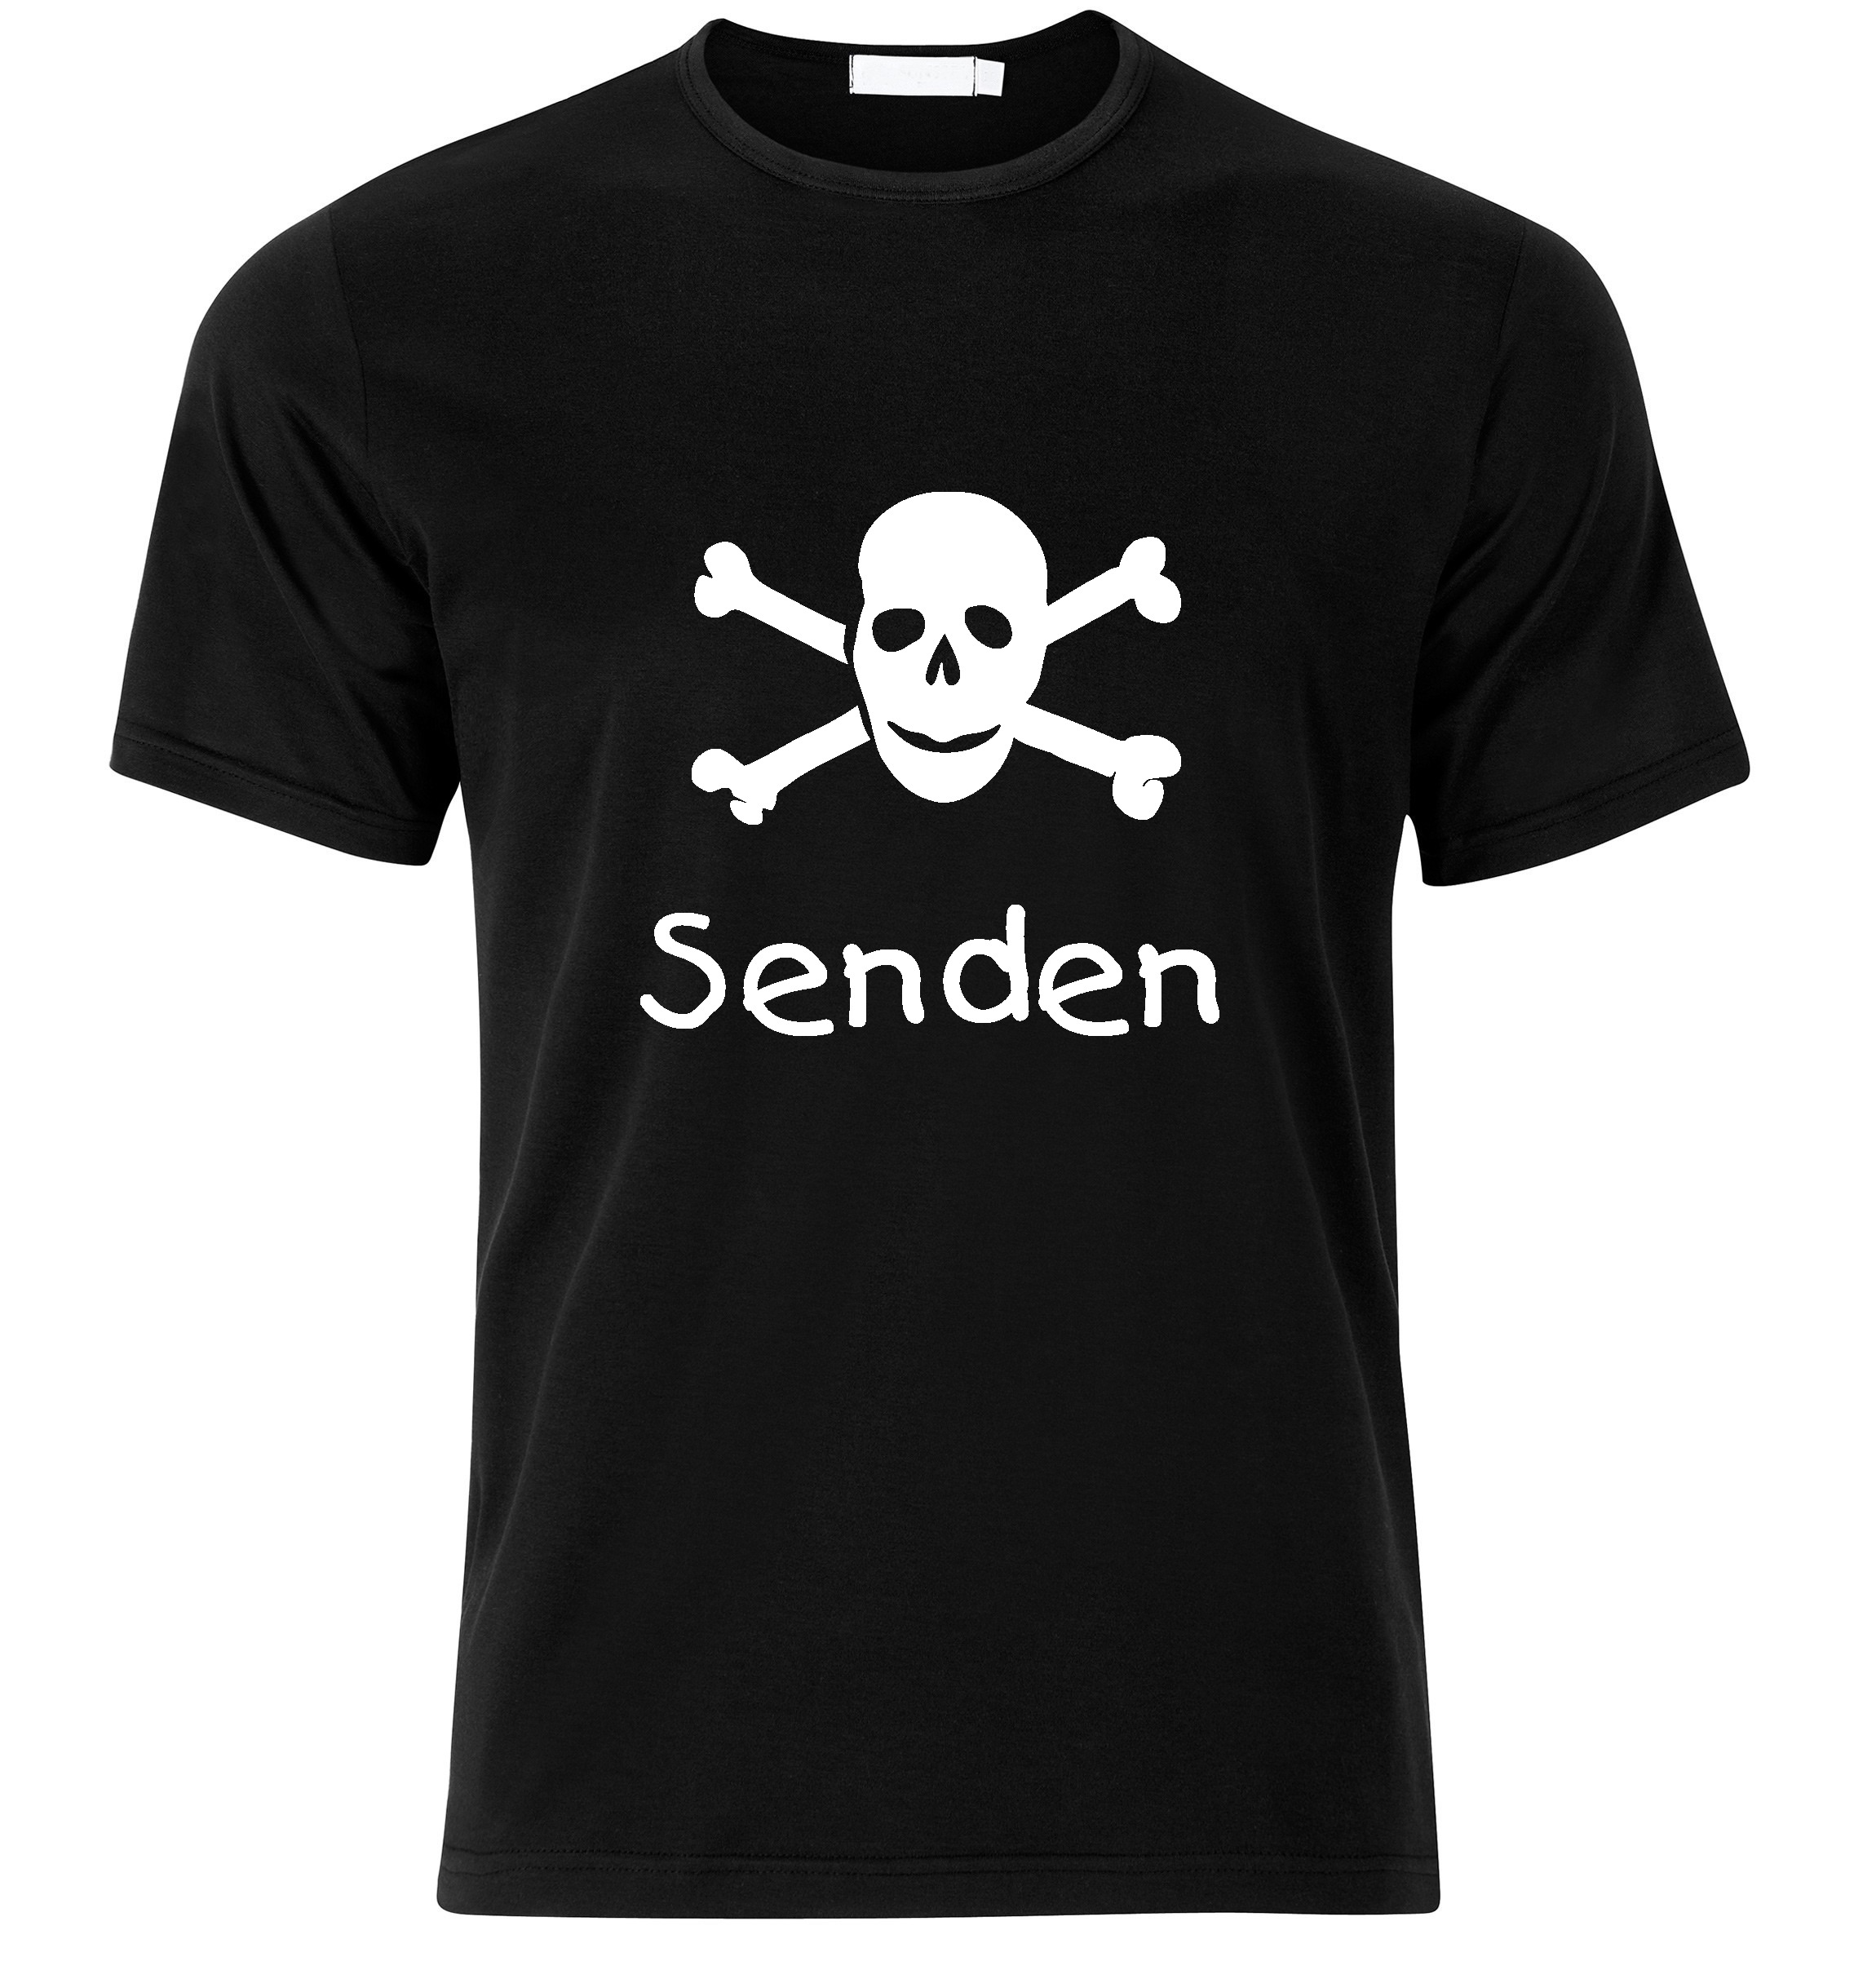 T-Shirt Senden Jolly Roger, Totenkopf